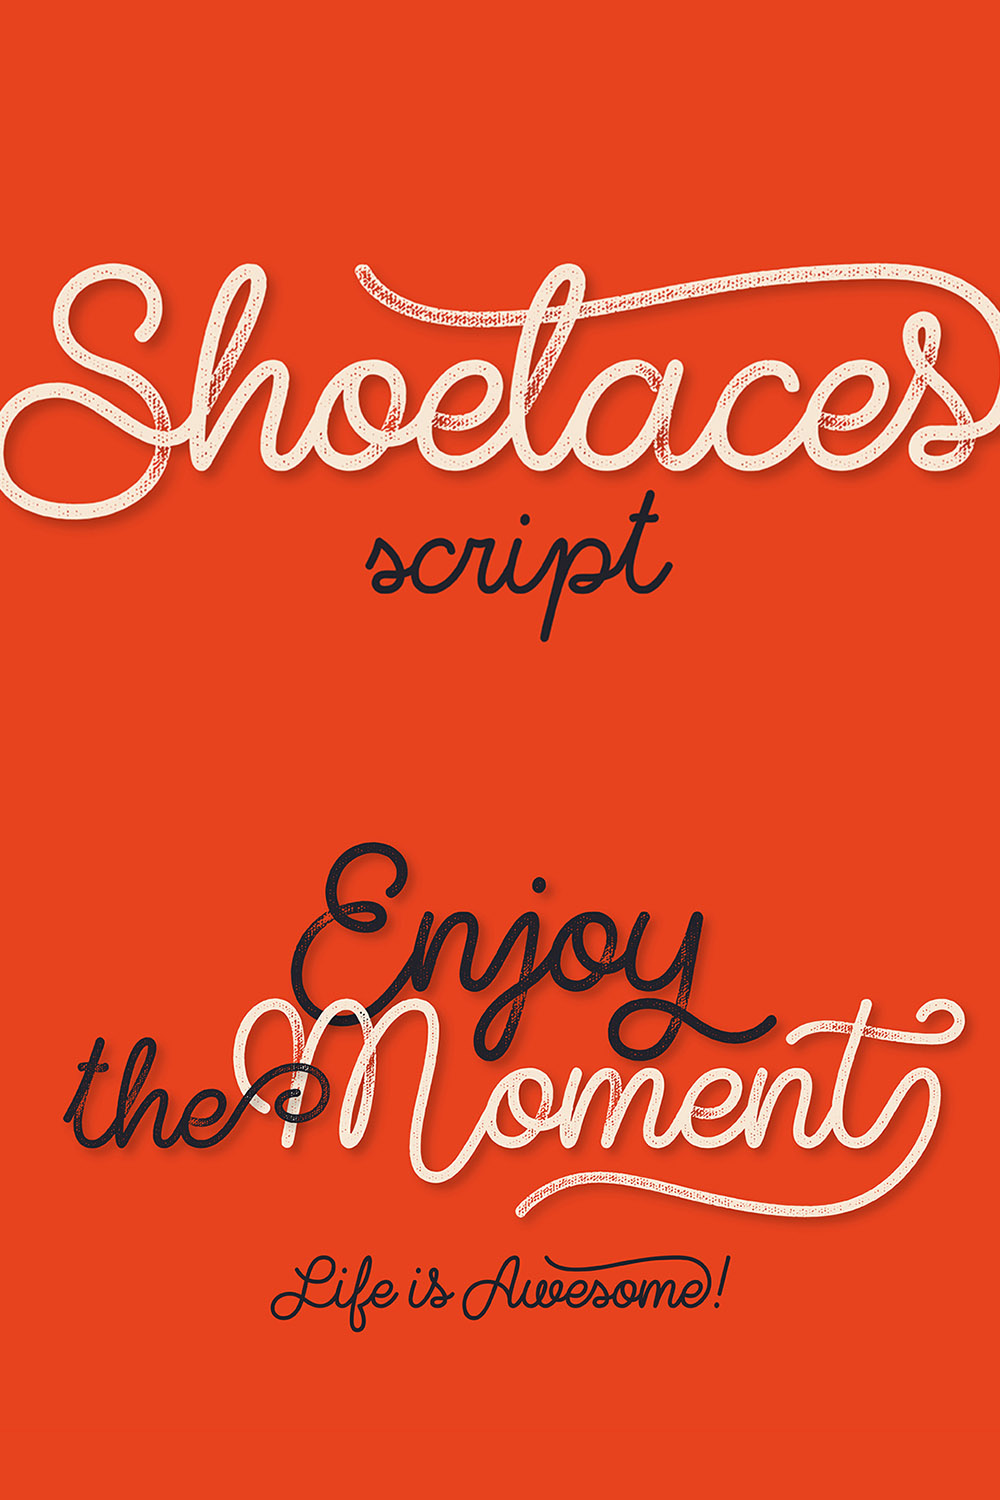 Shoelaces Font Pinterest Collage image.